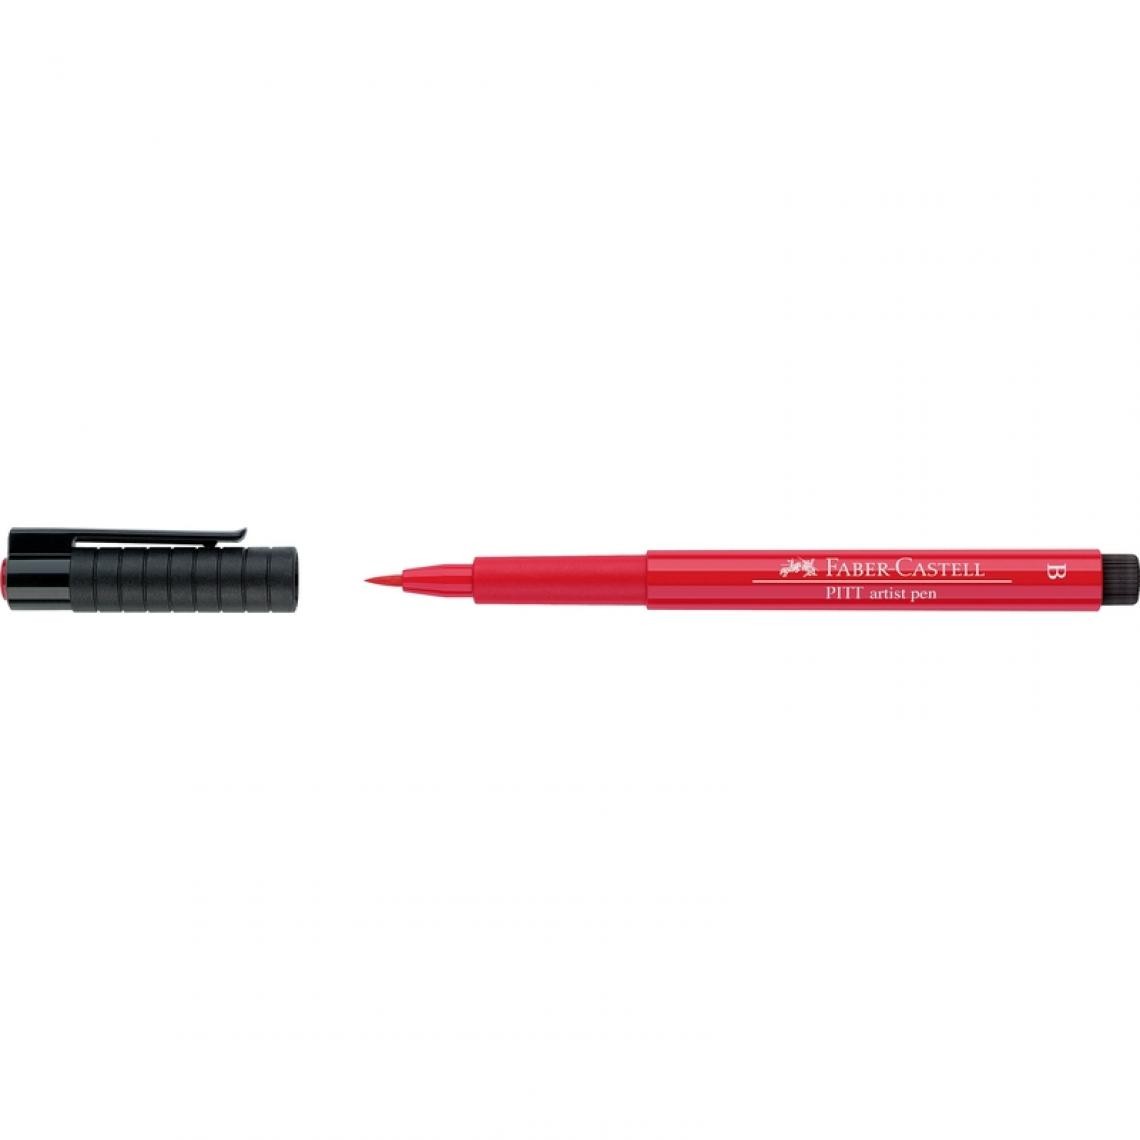 Faber-Castell - FABER-CASTELL Feutre PITT artist pen, rouge géranium clair () - Outils et accessoires du peintre